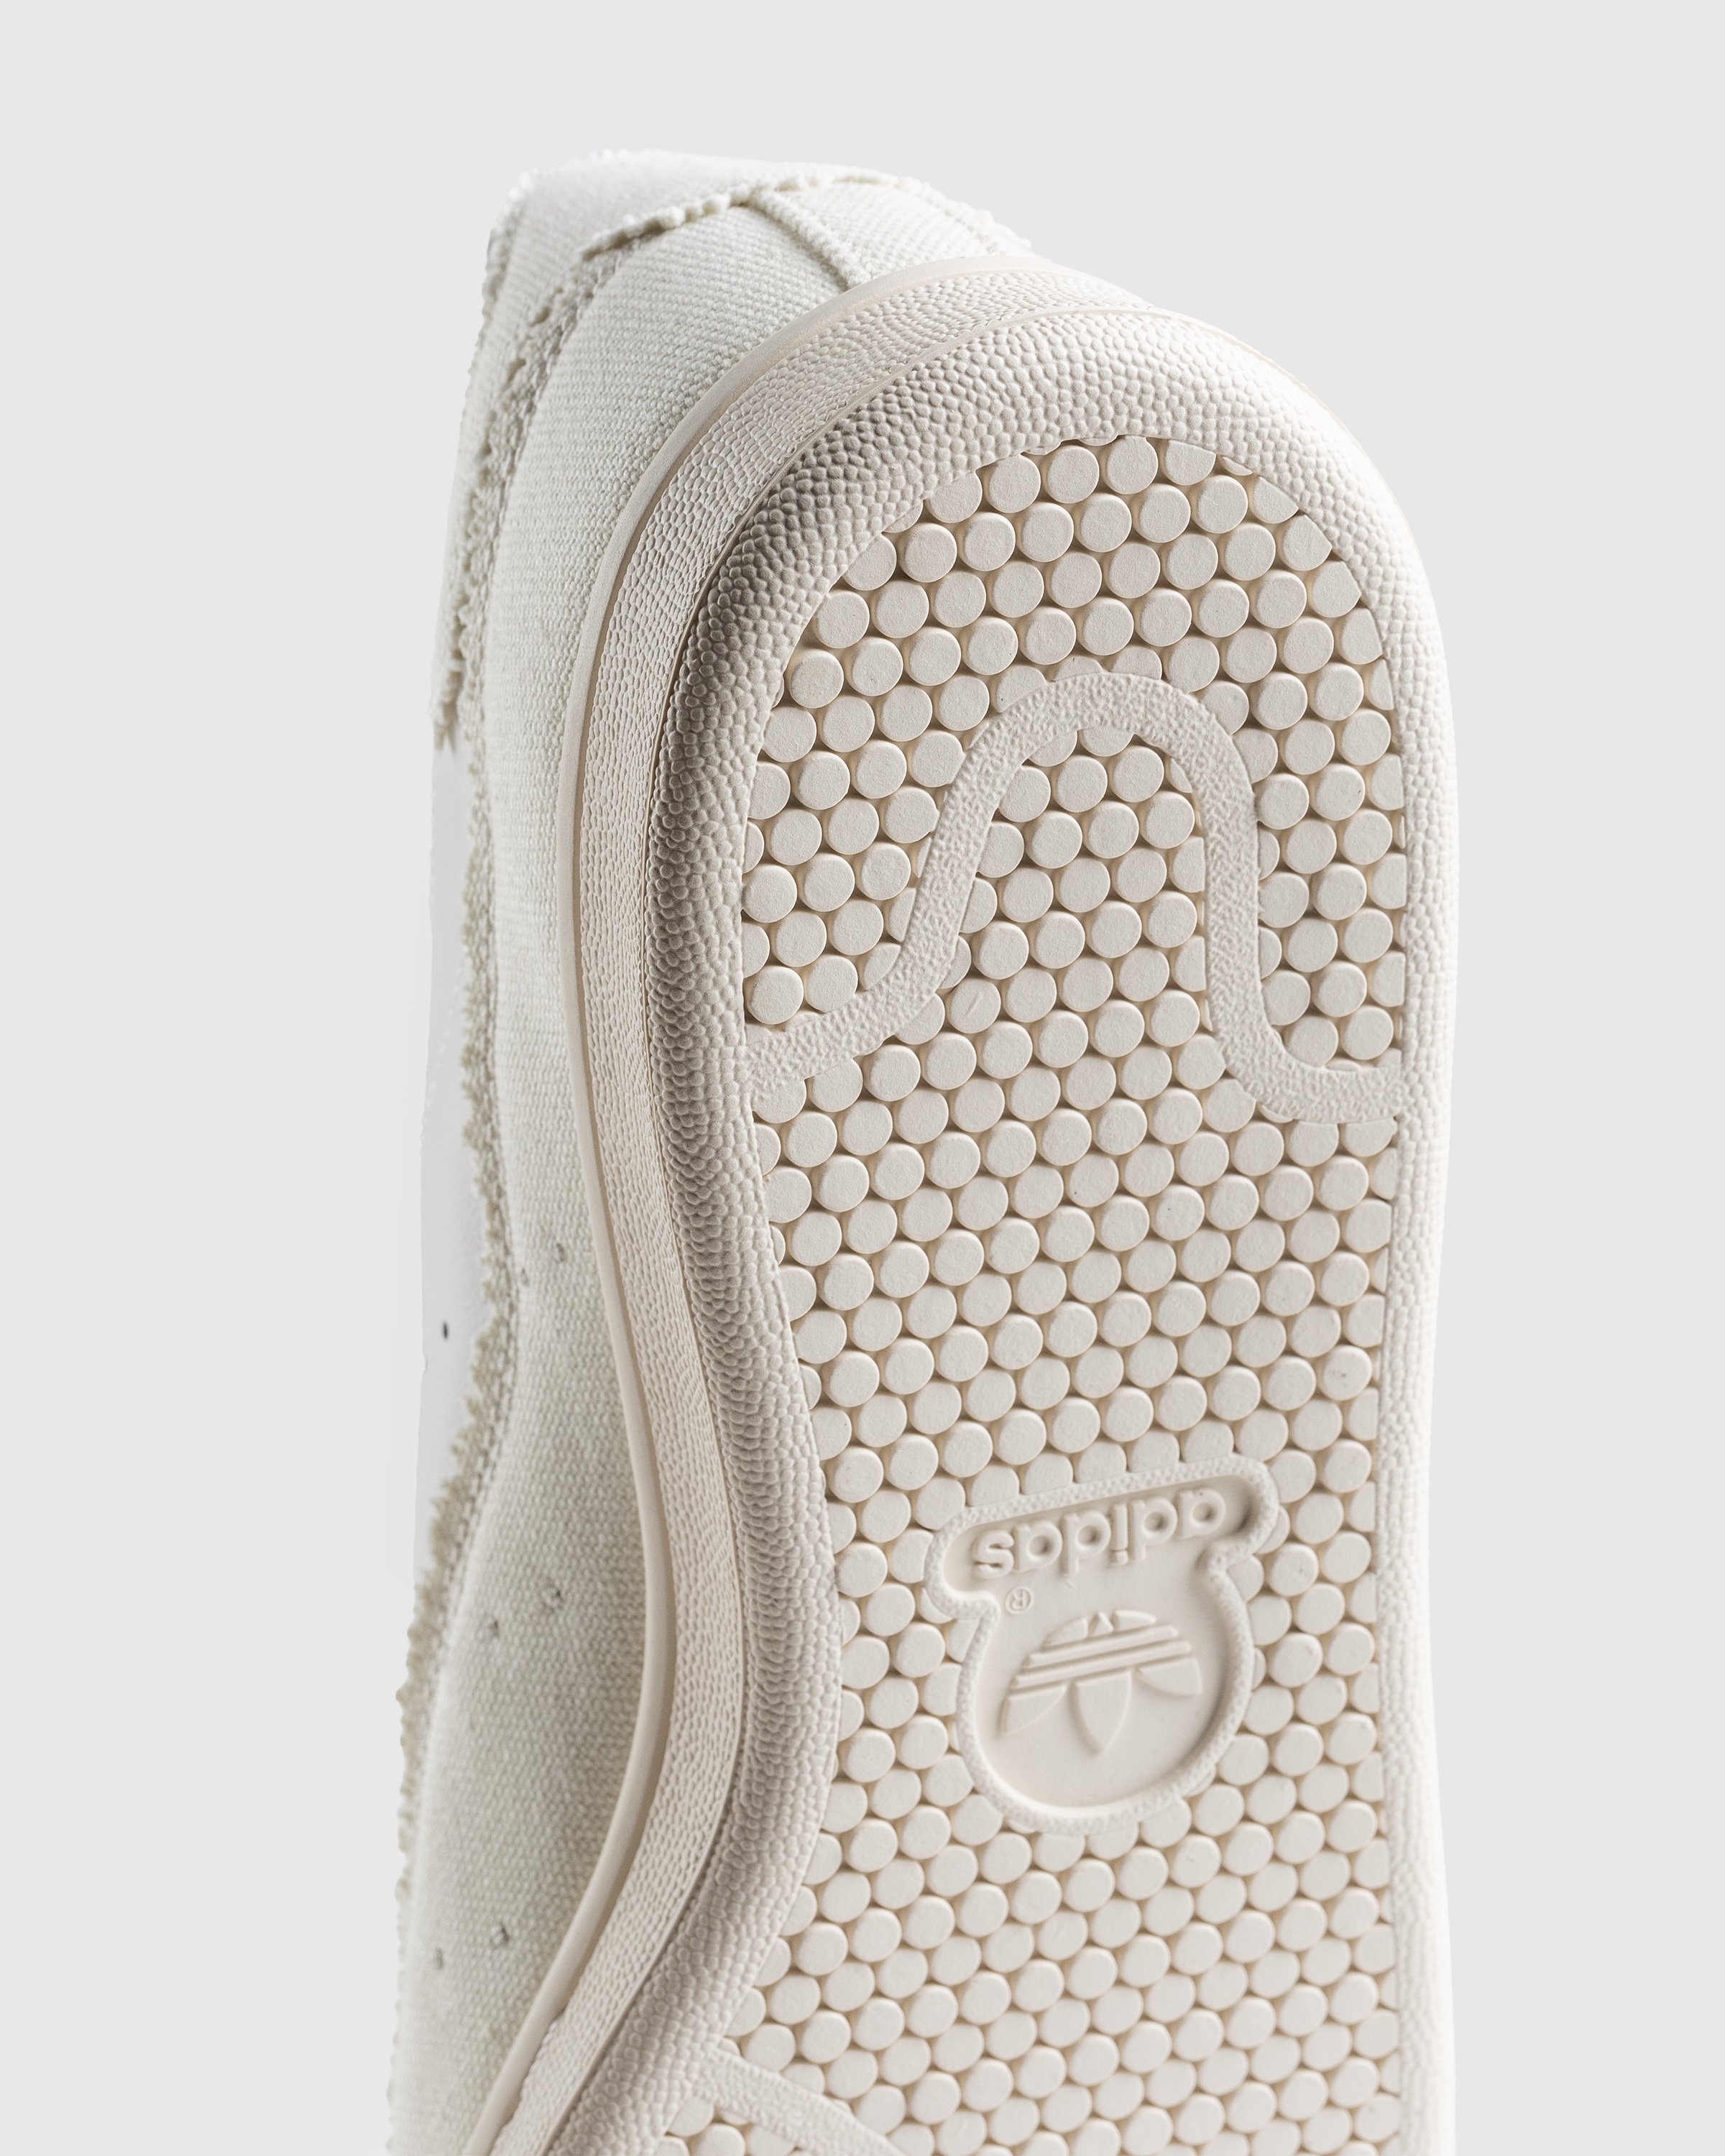 Adidas - Stan Smith Recon White - Footwear - White - Image 6